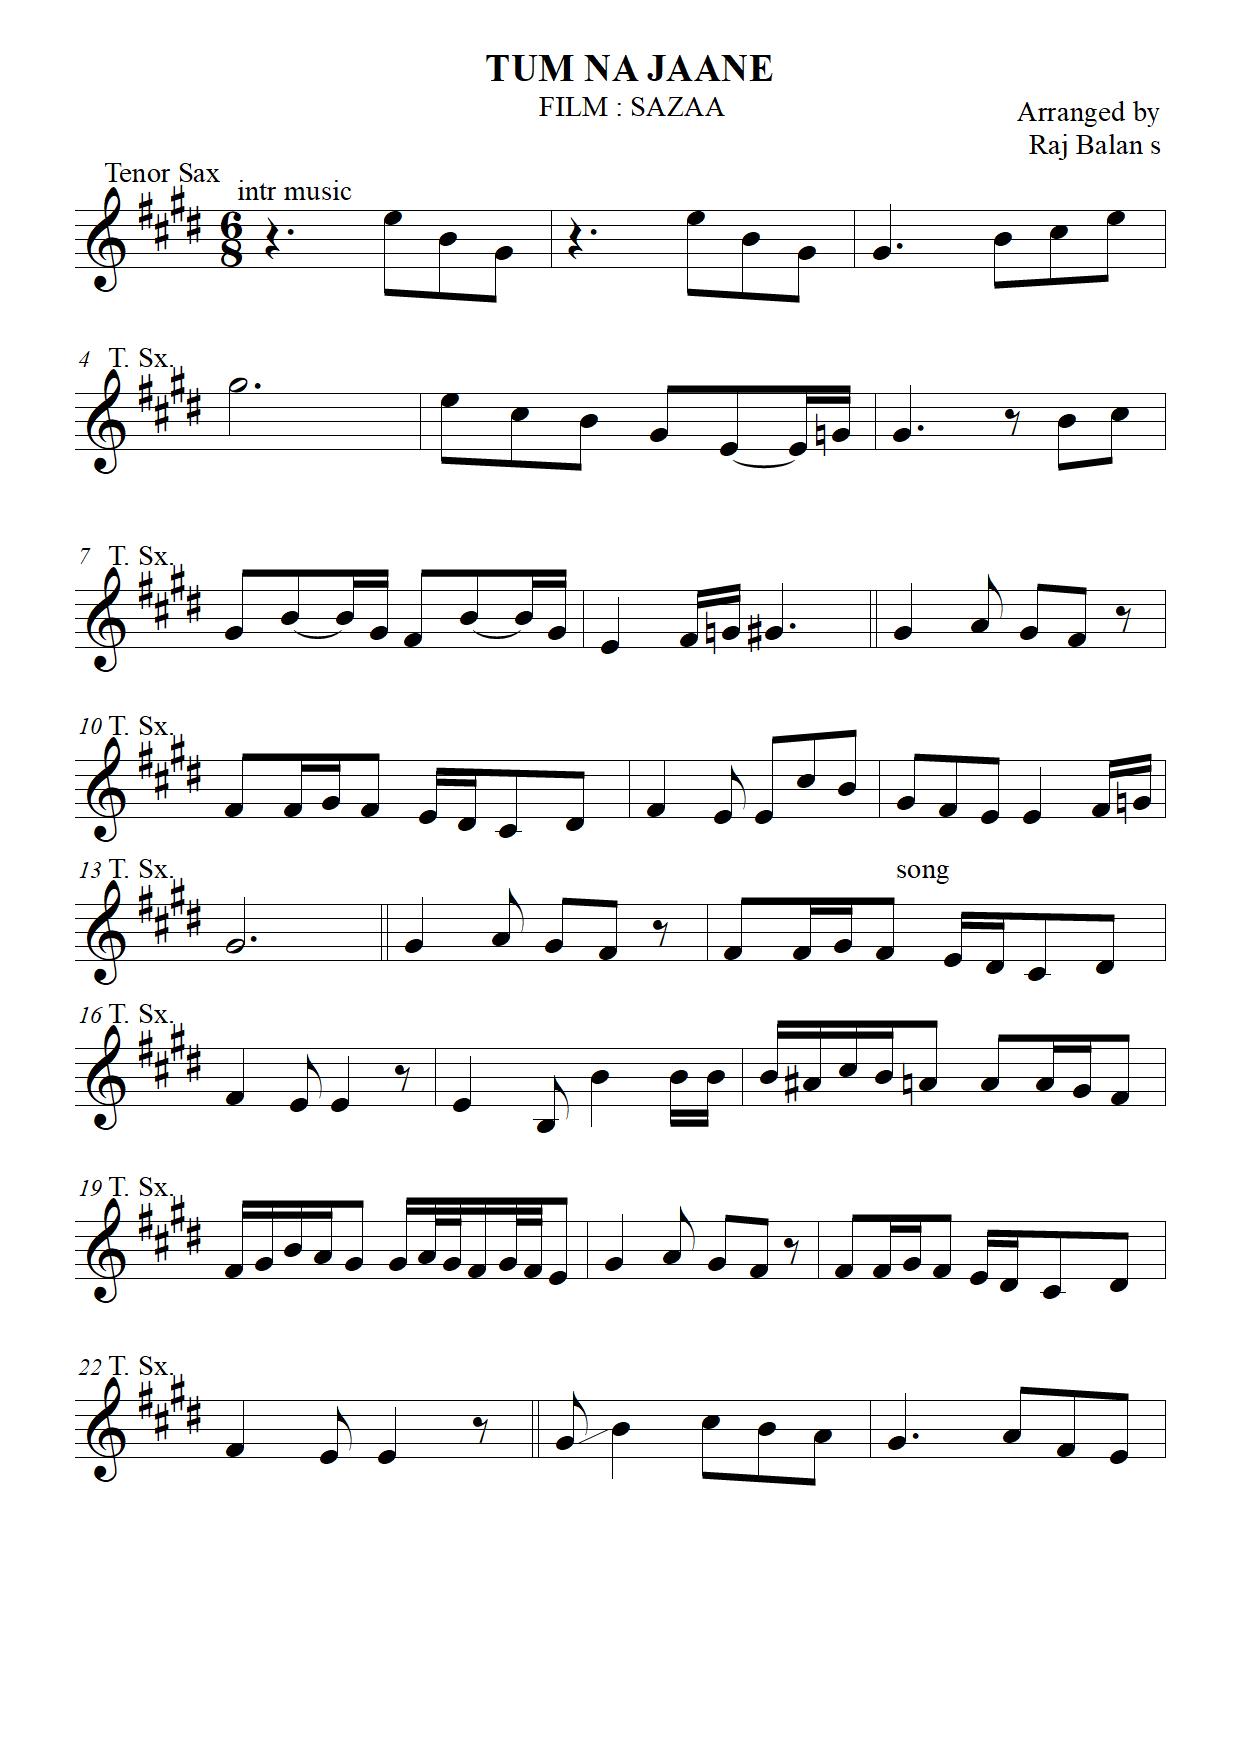 hindi song notation book pdf